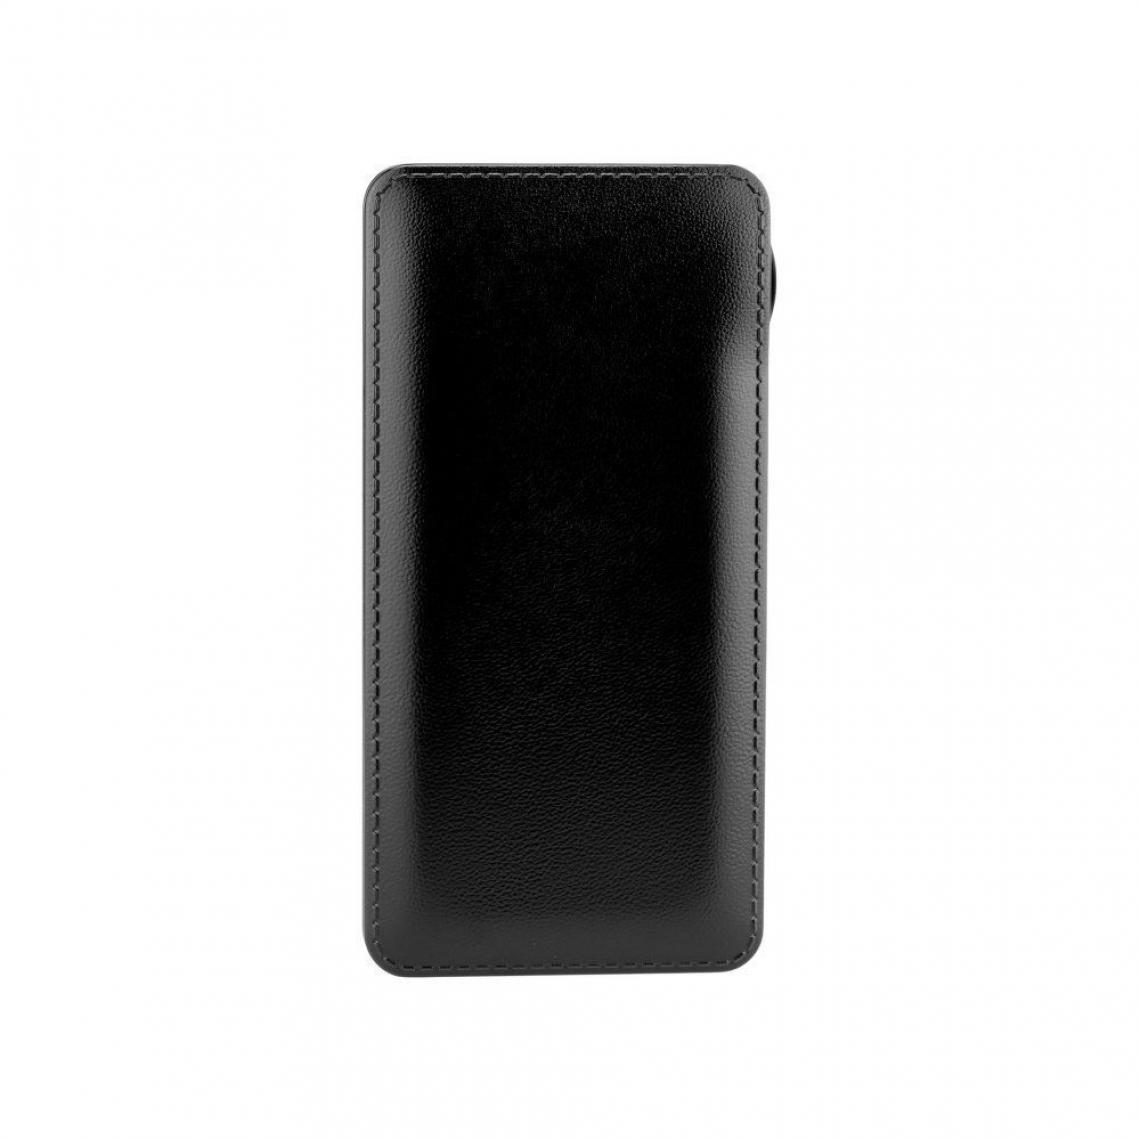 Ozzzo - Chargeur batterie externe 20000 mAh powerbank ozzzo noir pour Xiaomi Redmi 6 Pro - Autres accessoires smartphone